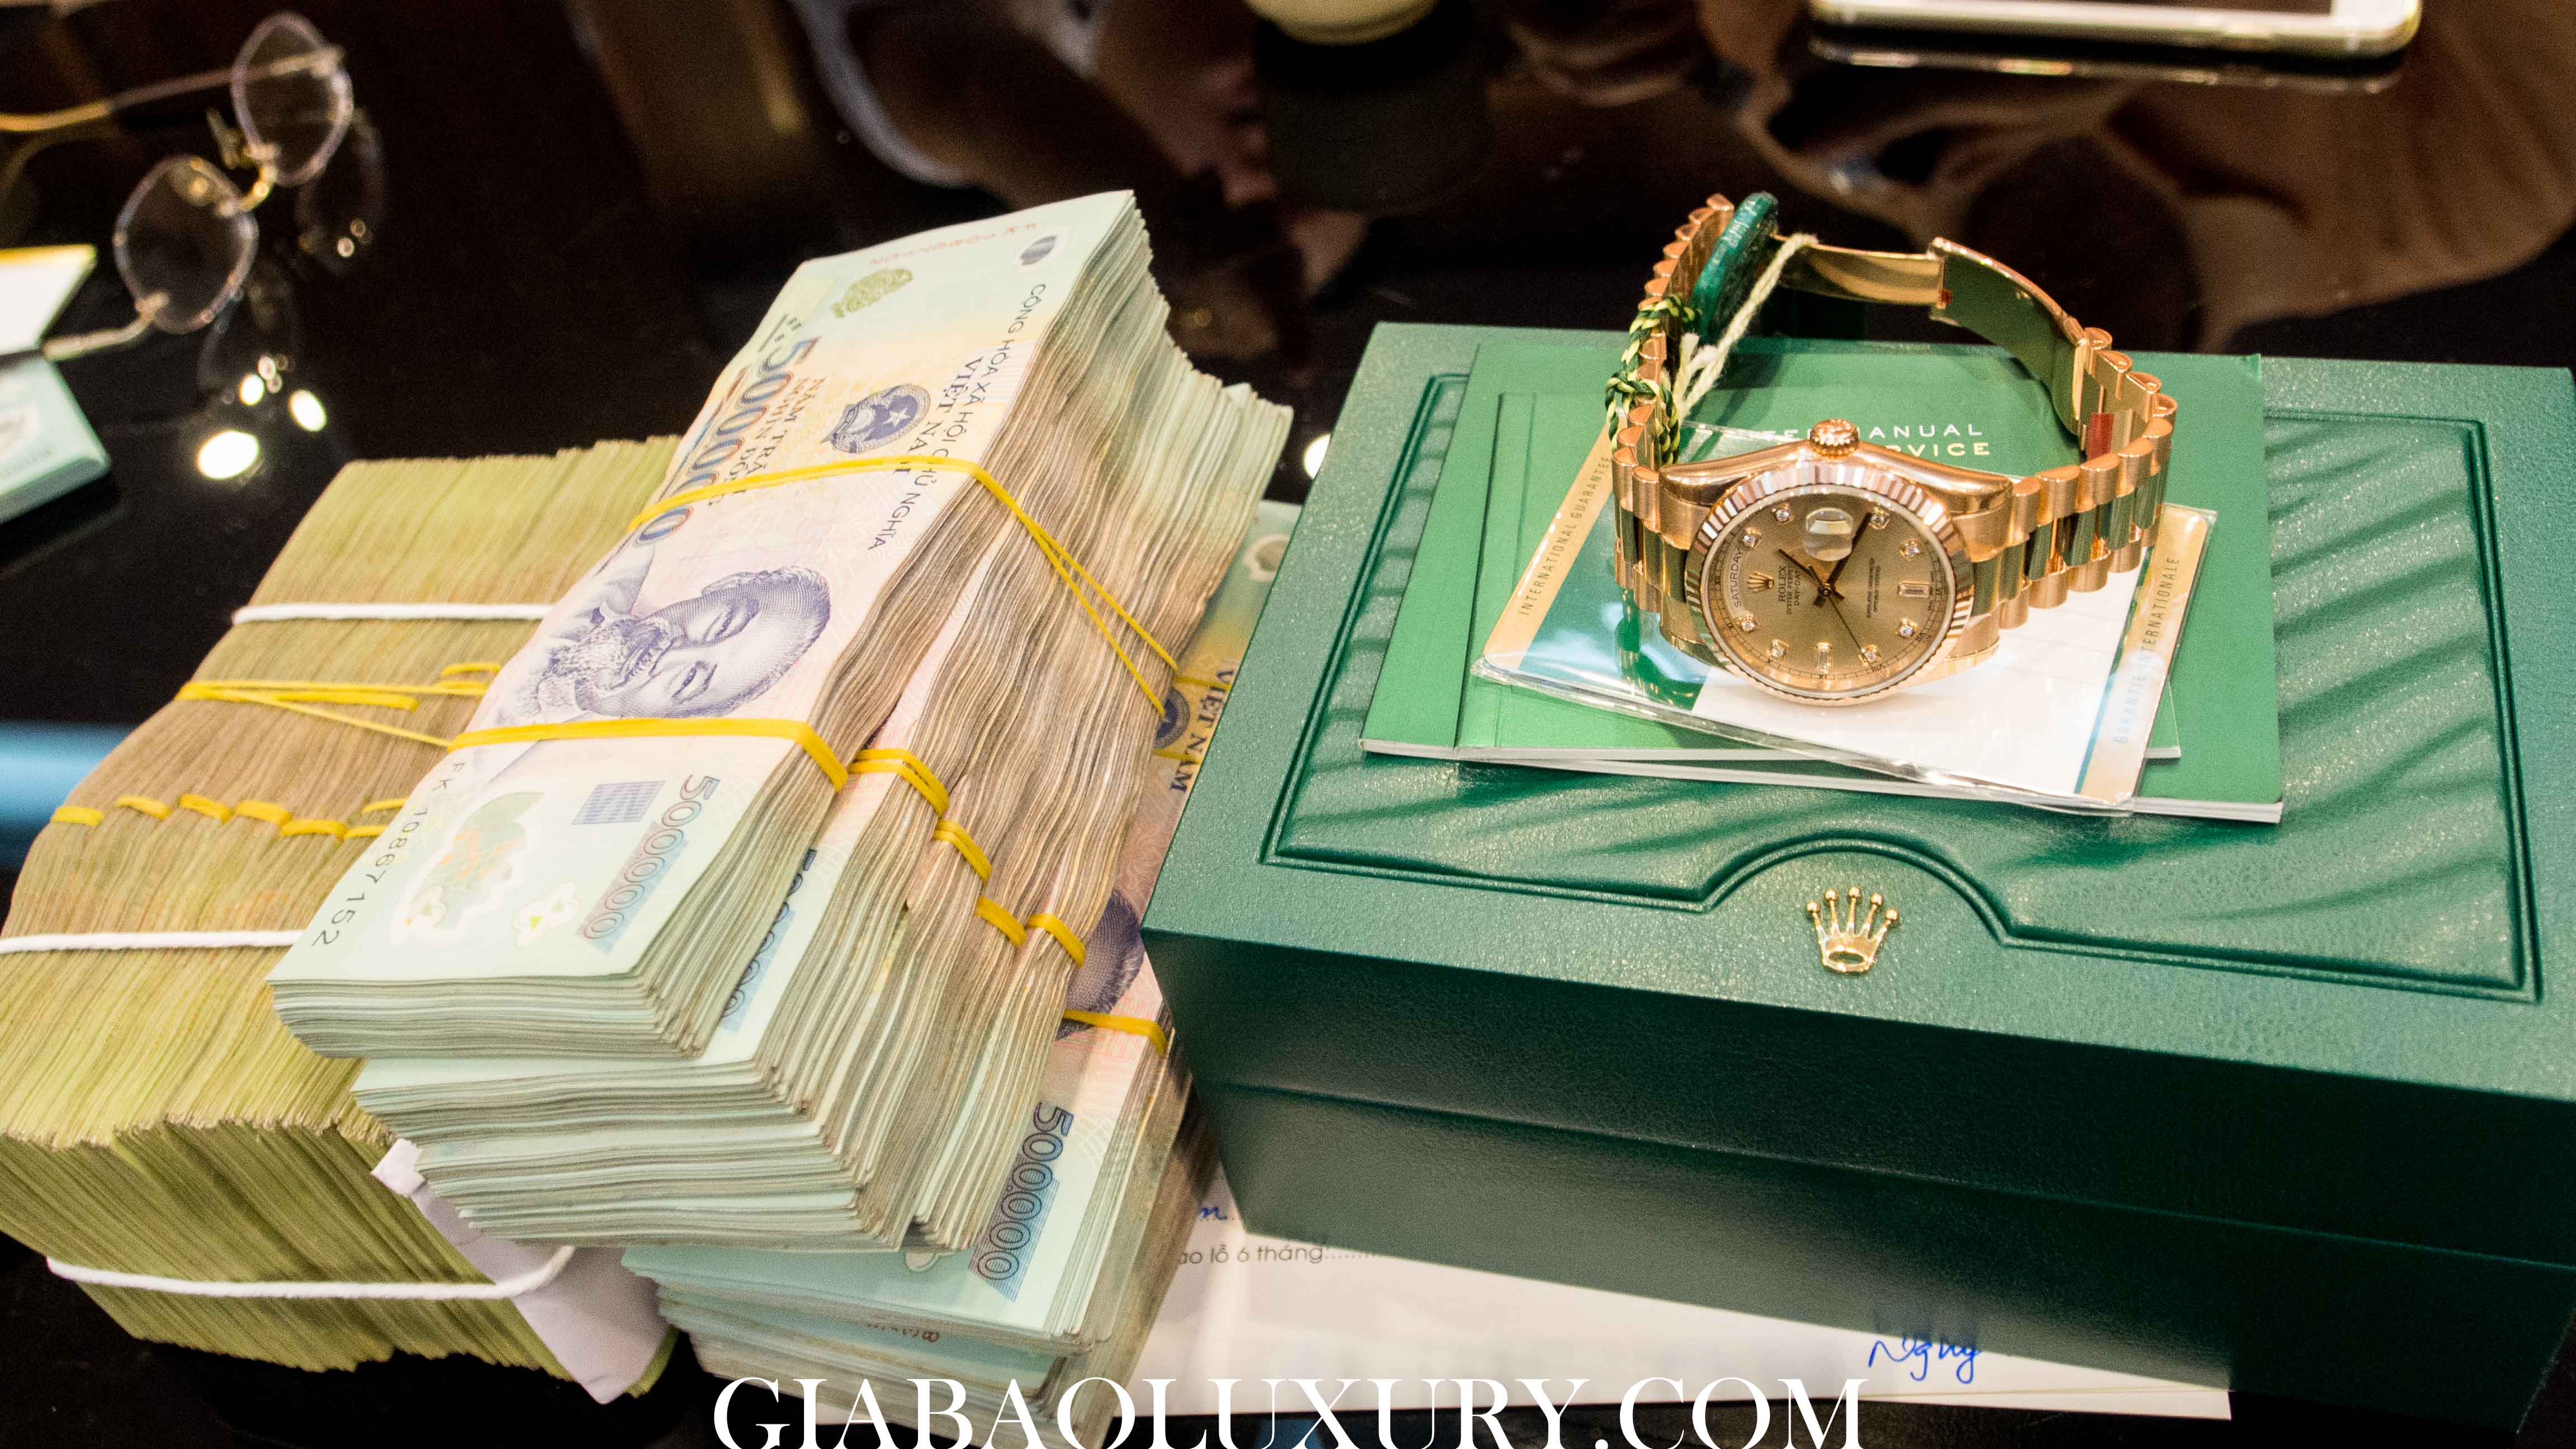 Thu mua đồng hồ Cartier Drive de Cartier tại Gia Bảo Luxury 